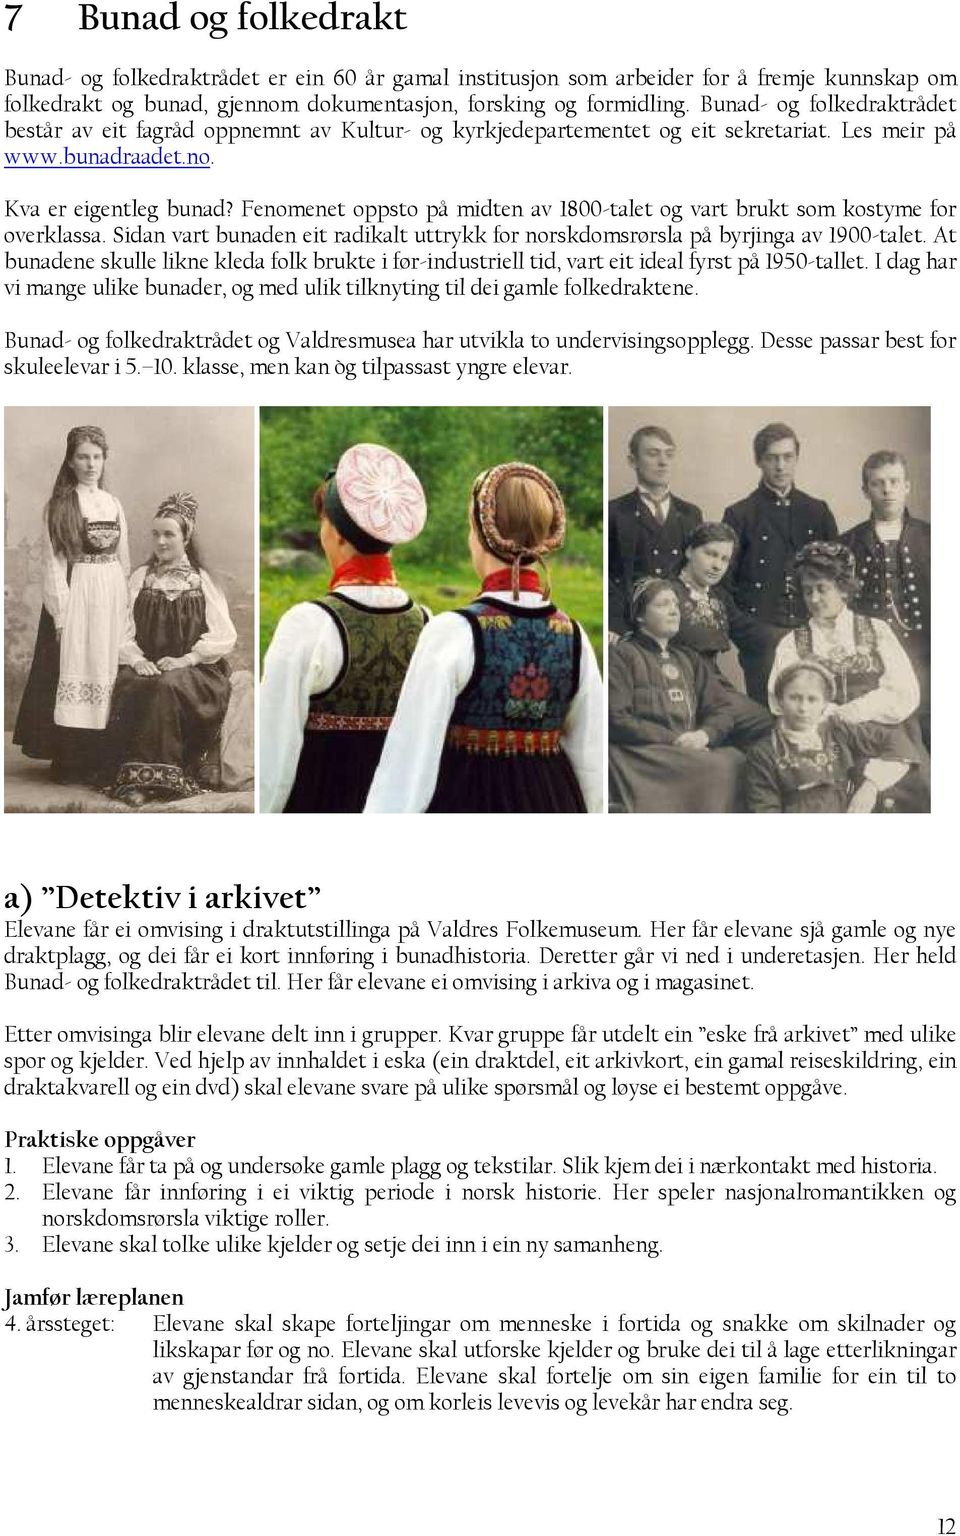 Fenomenet oppsto på midten av 1800-talet og vart brukt som kostyme for overklassa. Sidan vart bunaden eit radikalt uttrykk for norskdomsrørsla på byrjinga av 1900-talet.